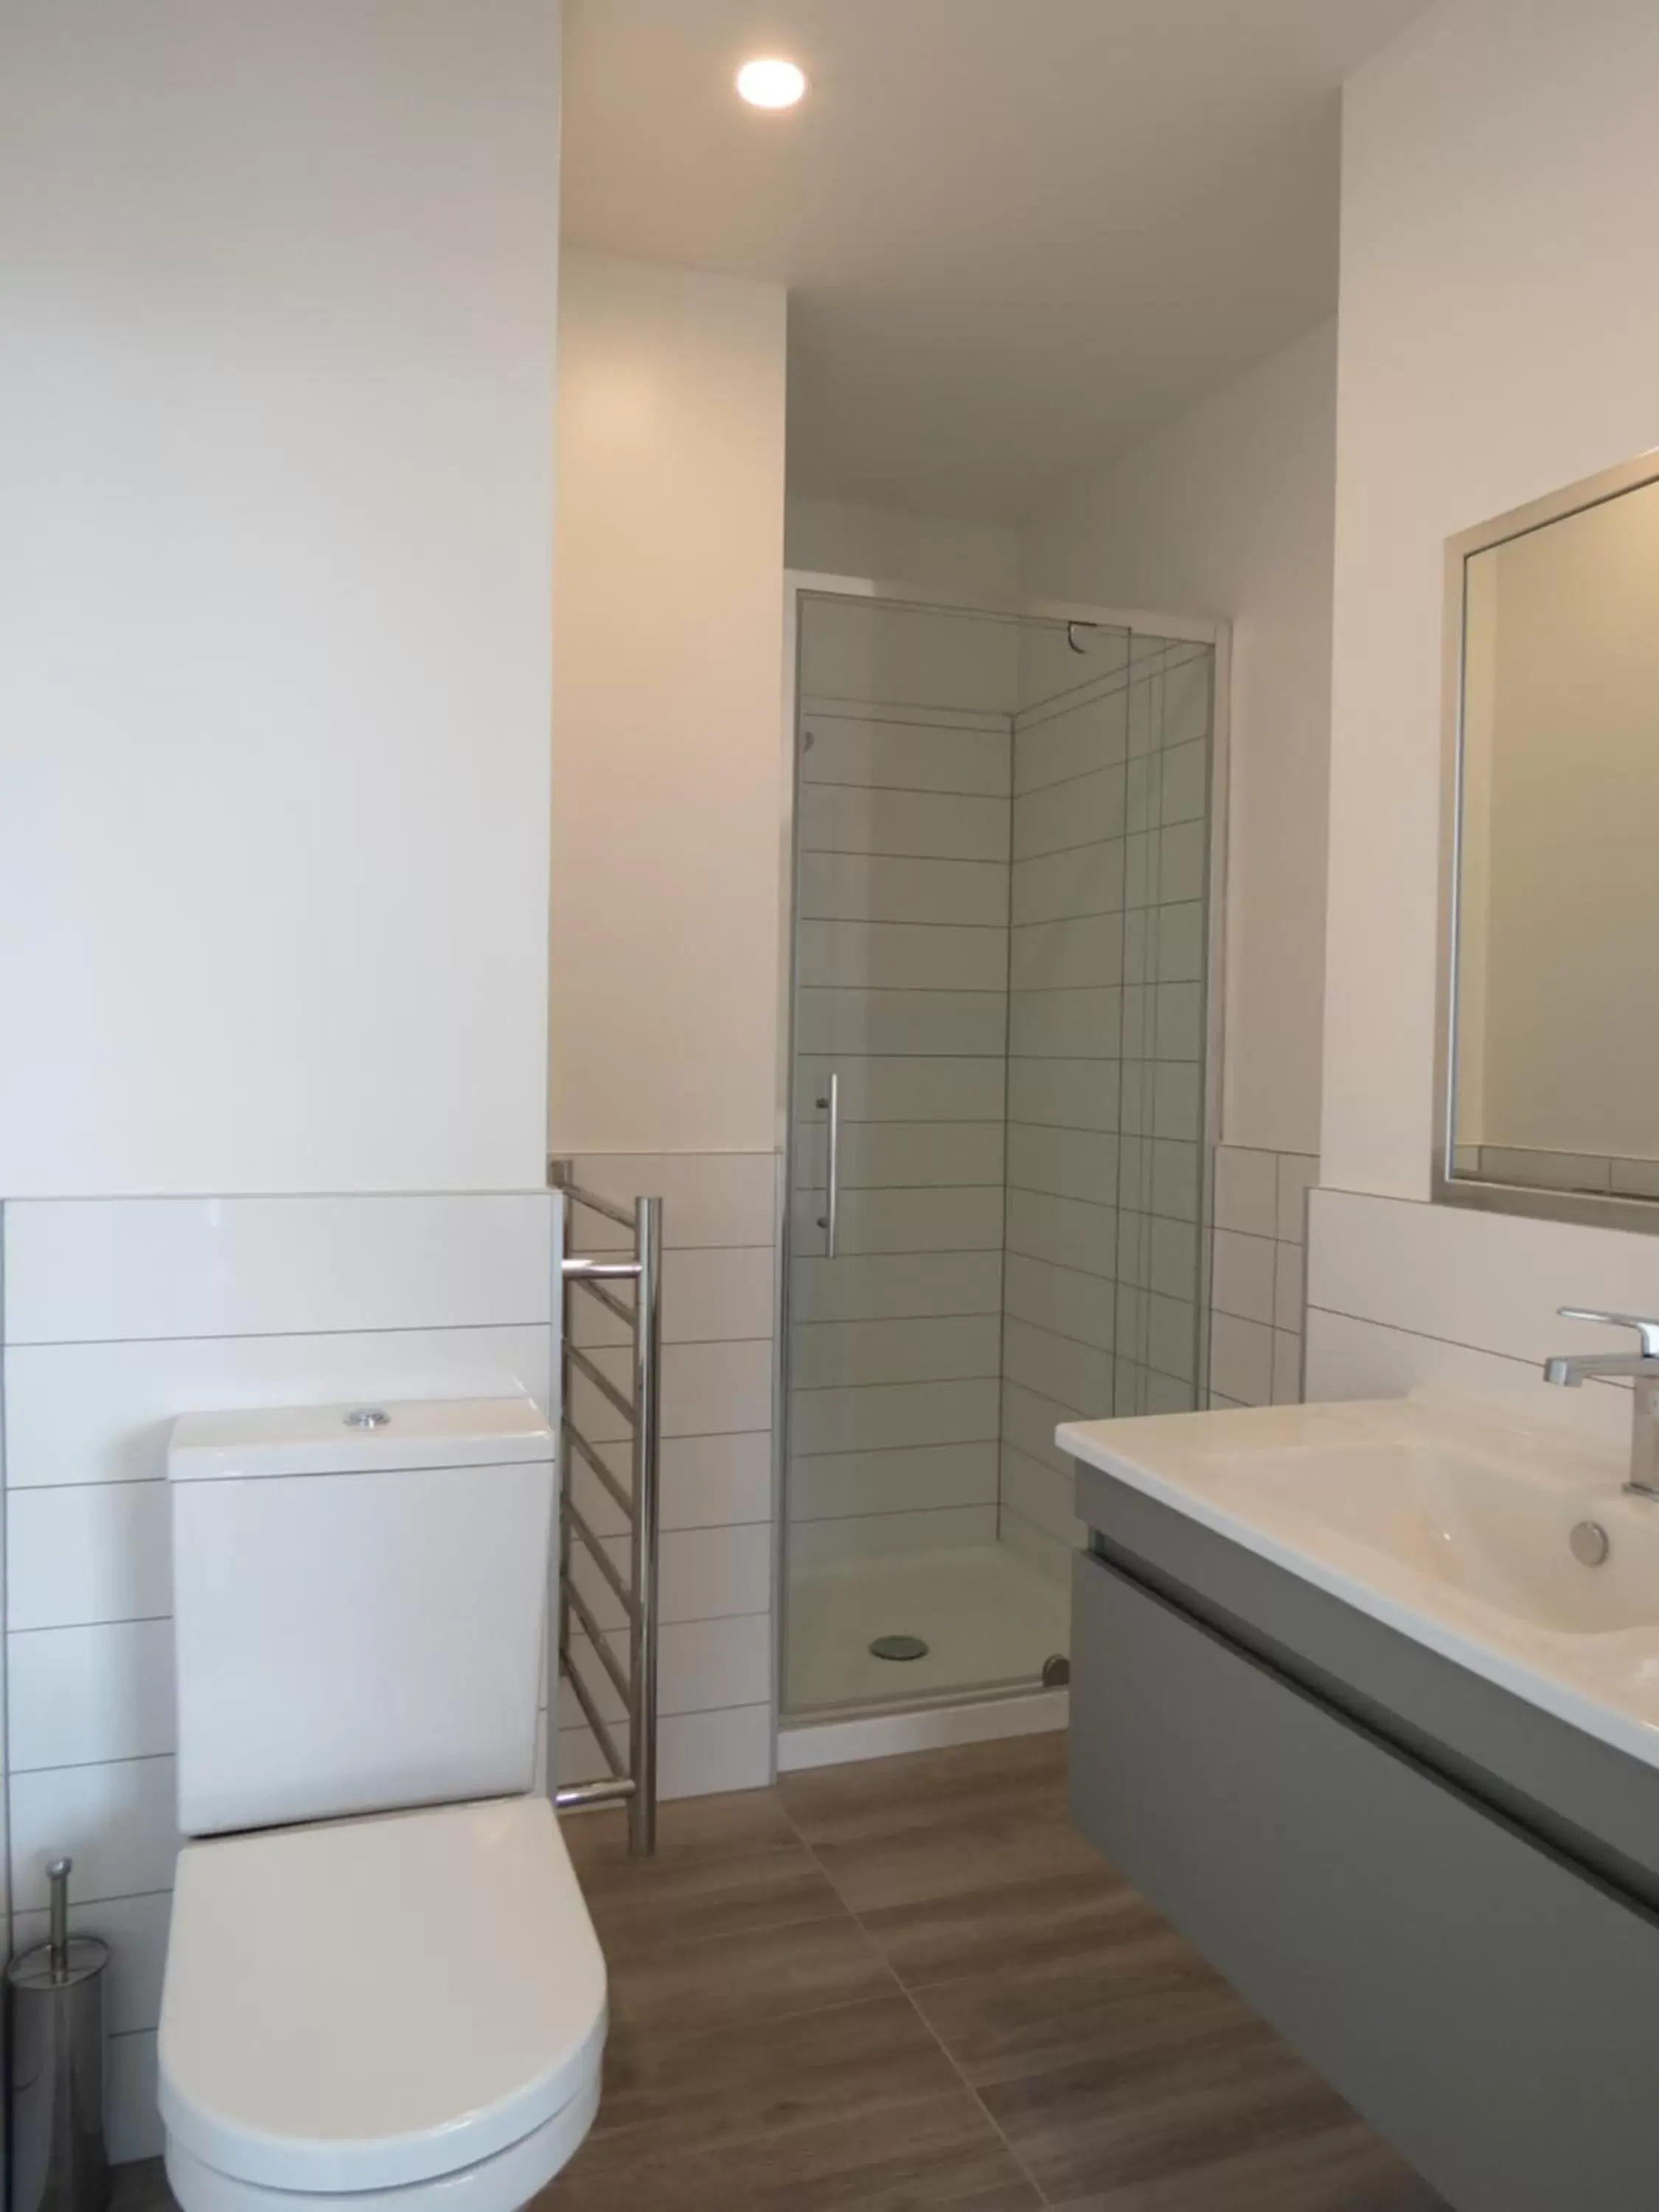 Shower, Bathroom in Ramada Suites Victoria Street West